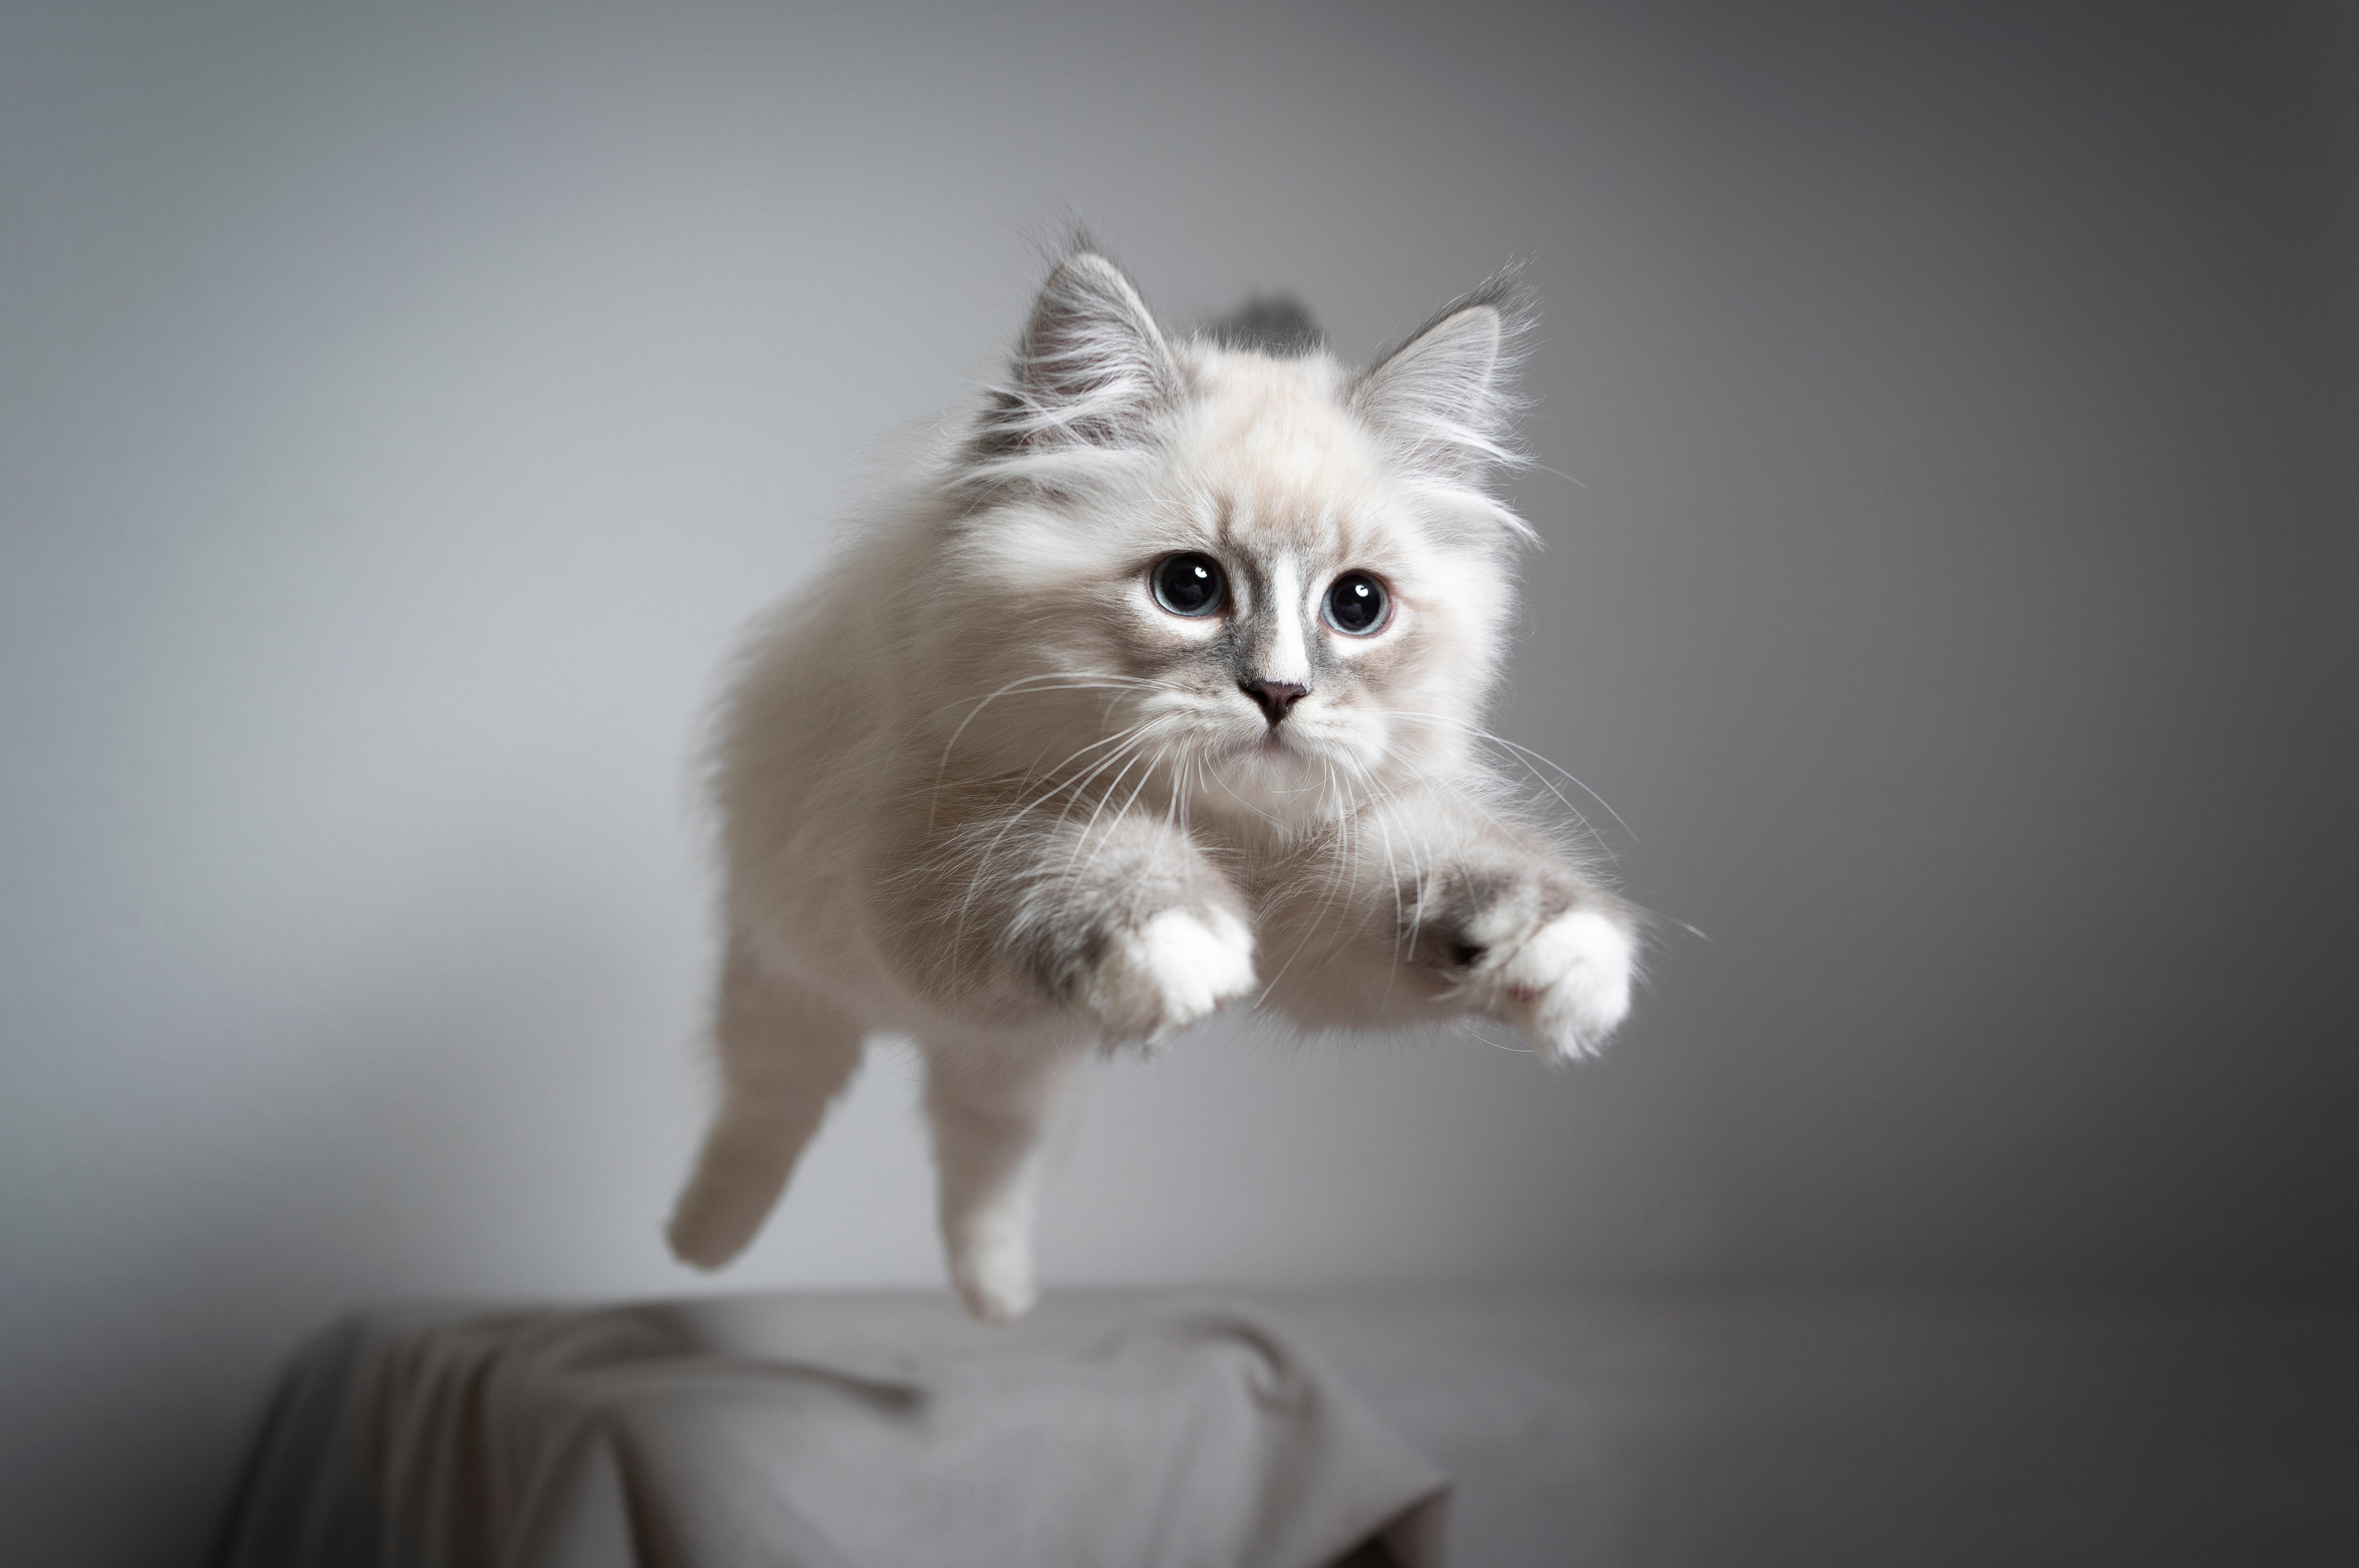 猫目線で心地よく暮らす vol.4「猫の運動」 – KARIMOKU CAT